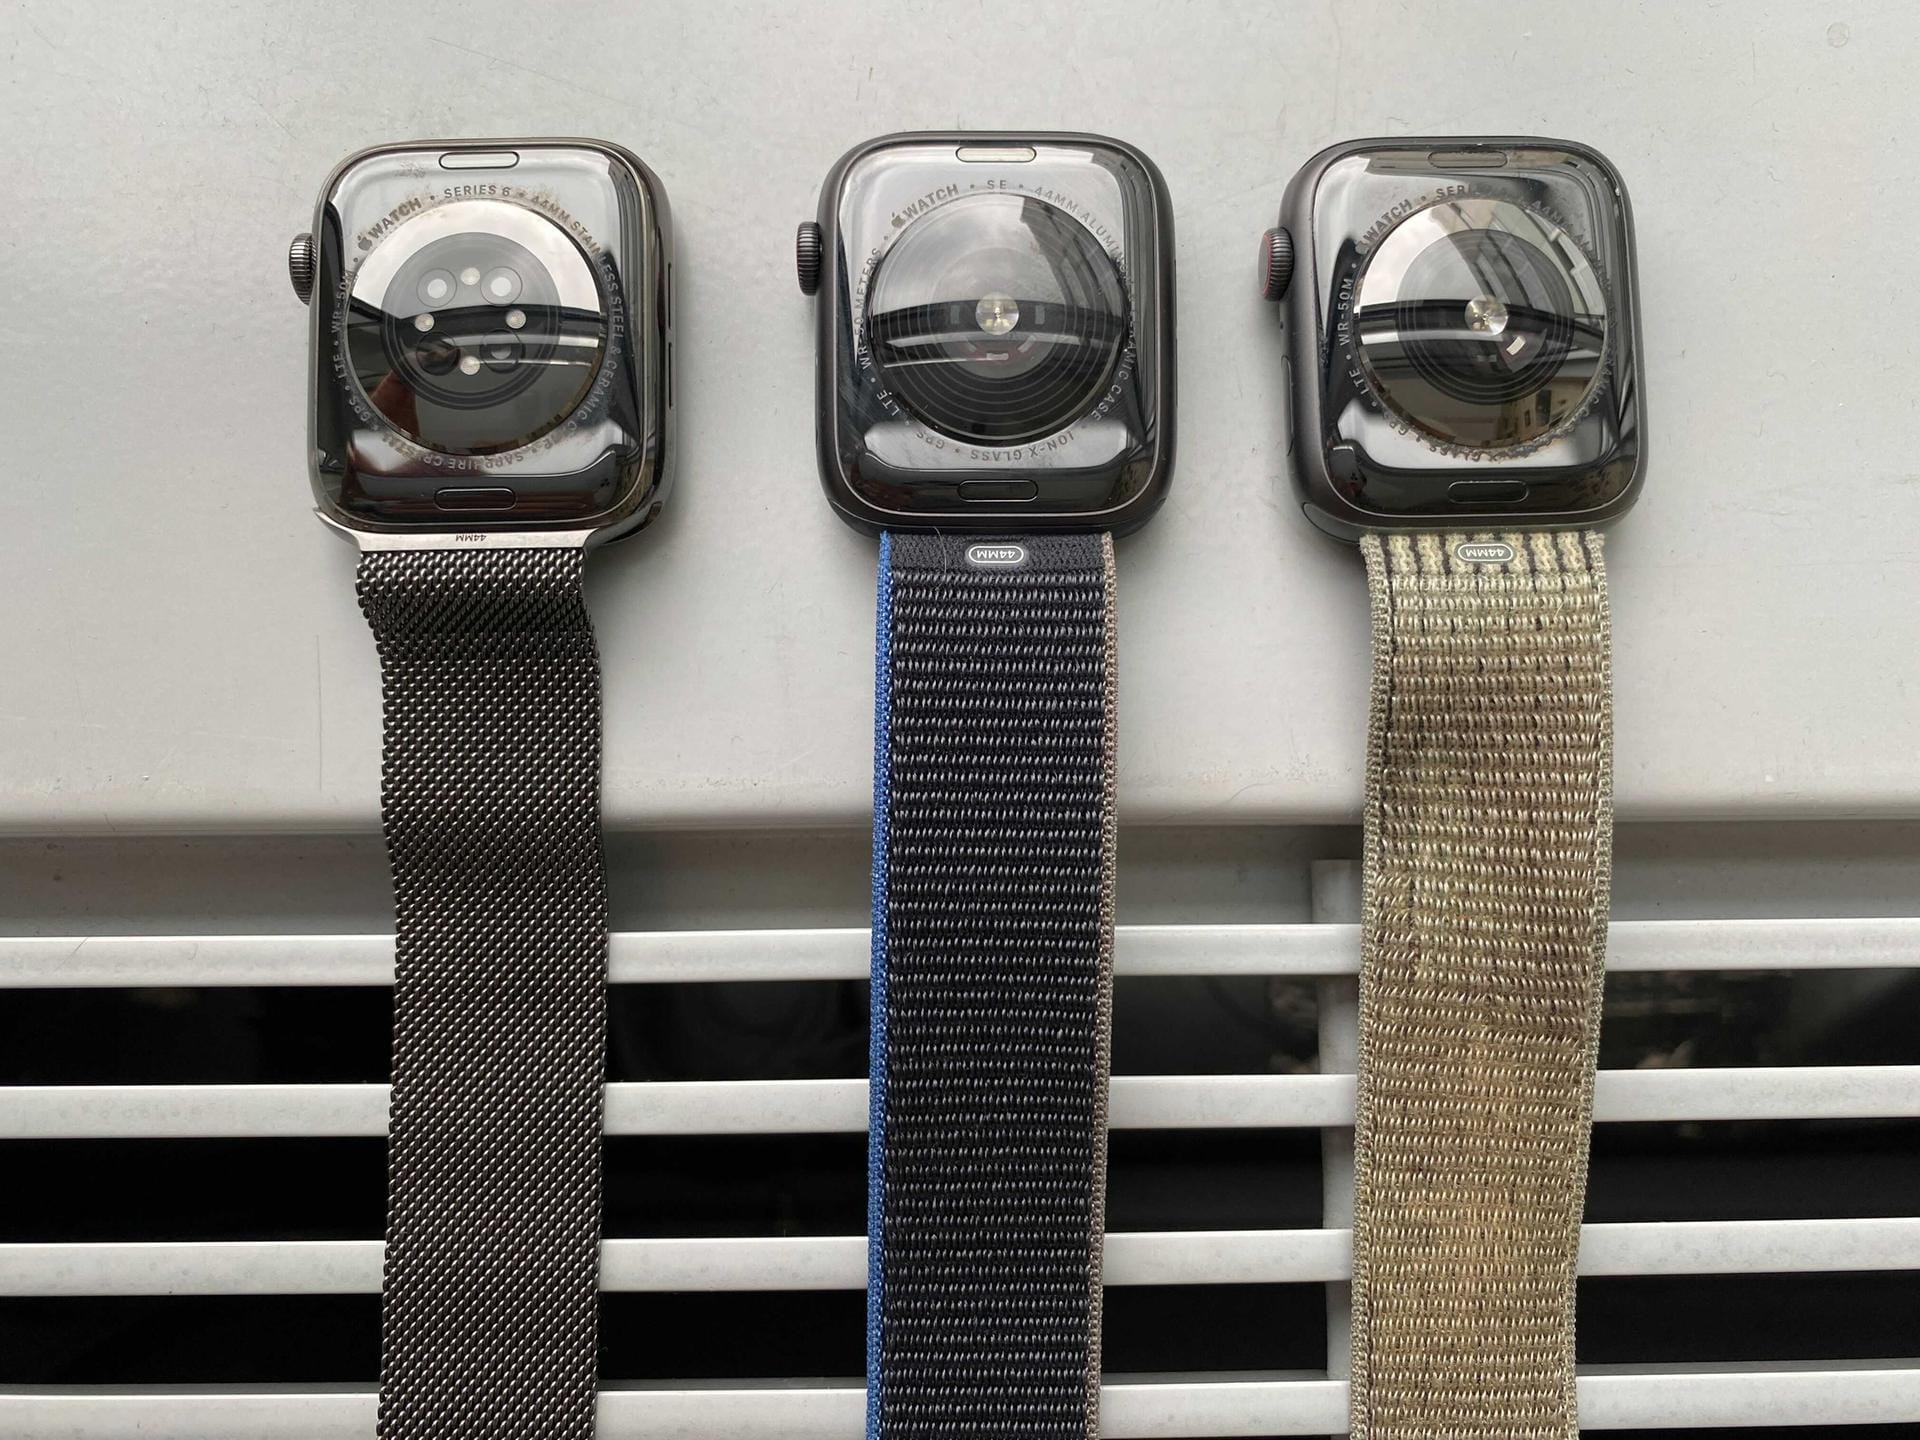 Die Unterschiede werden auf der Rückseite sichtbar: Hier liegen, von links nach rechts: Watch Series 6, Watch SE und Watch Series 5. Die beiden äußeren Modelle haben zusätzlich den Metallring für die EKG-Messung, die Series 6 hat als einzige die vier Aussparungen für Dioden und Photosensoren, mit denen der Blutsauerstoffgehalt bestimmt wird.